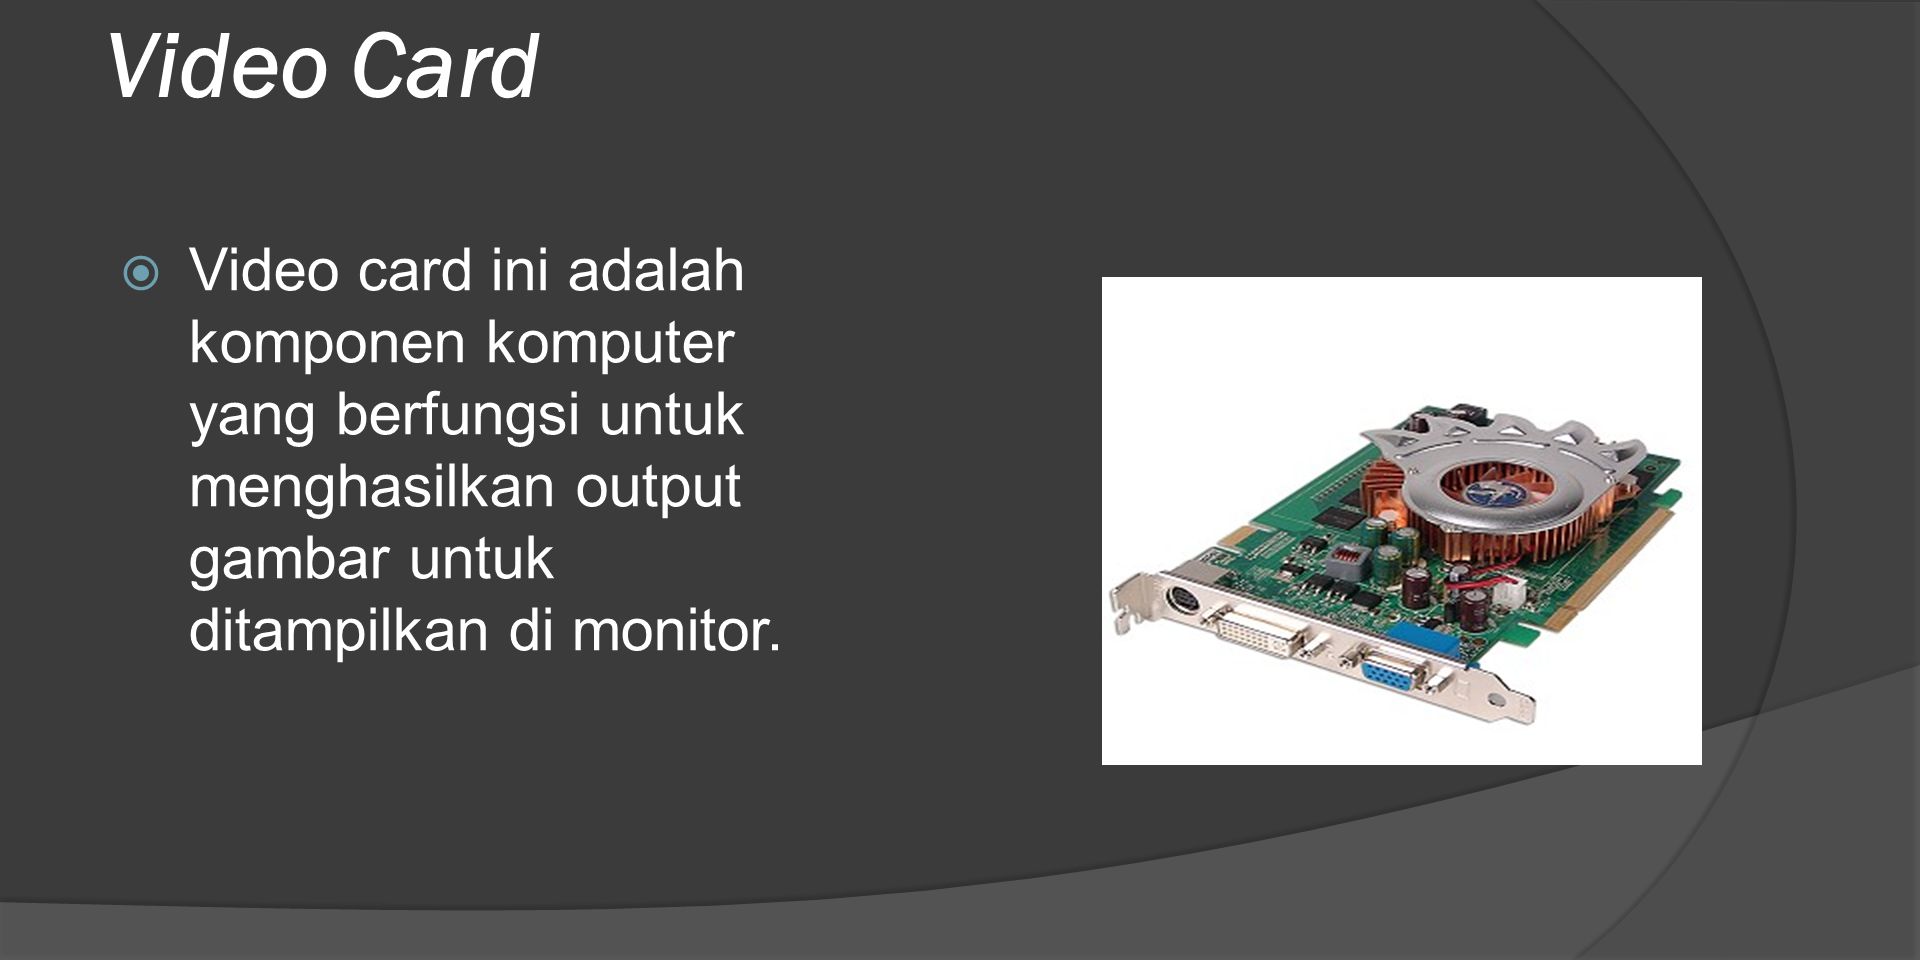 Video Card Video card ini adalah komponen komputer yang berfungsi untuk menghasilkan output gambar untuk ditampilkan di monitor.